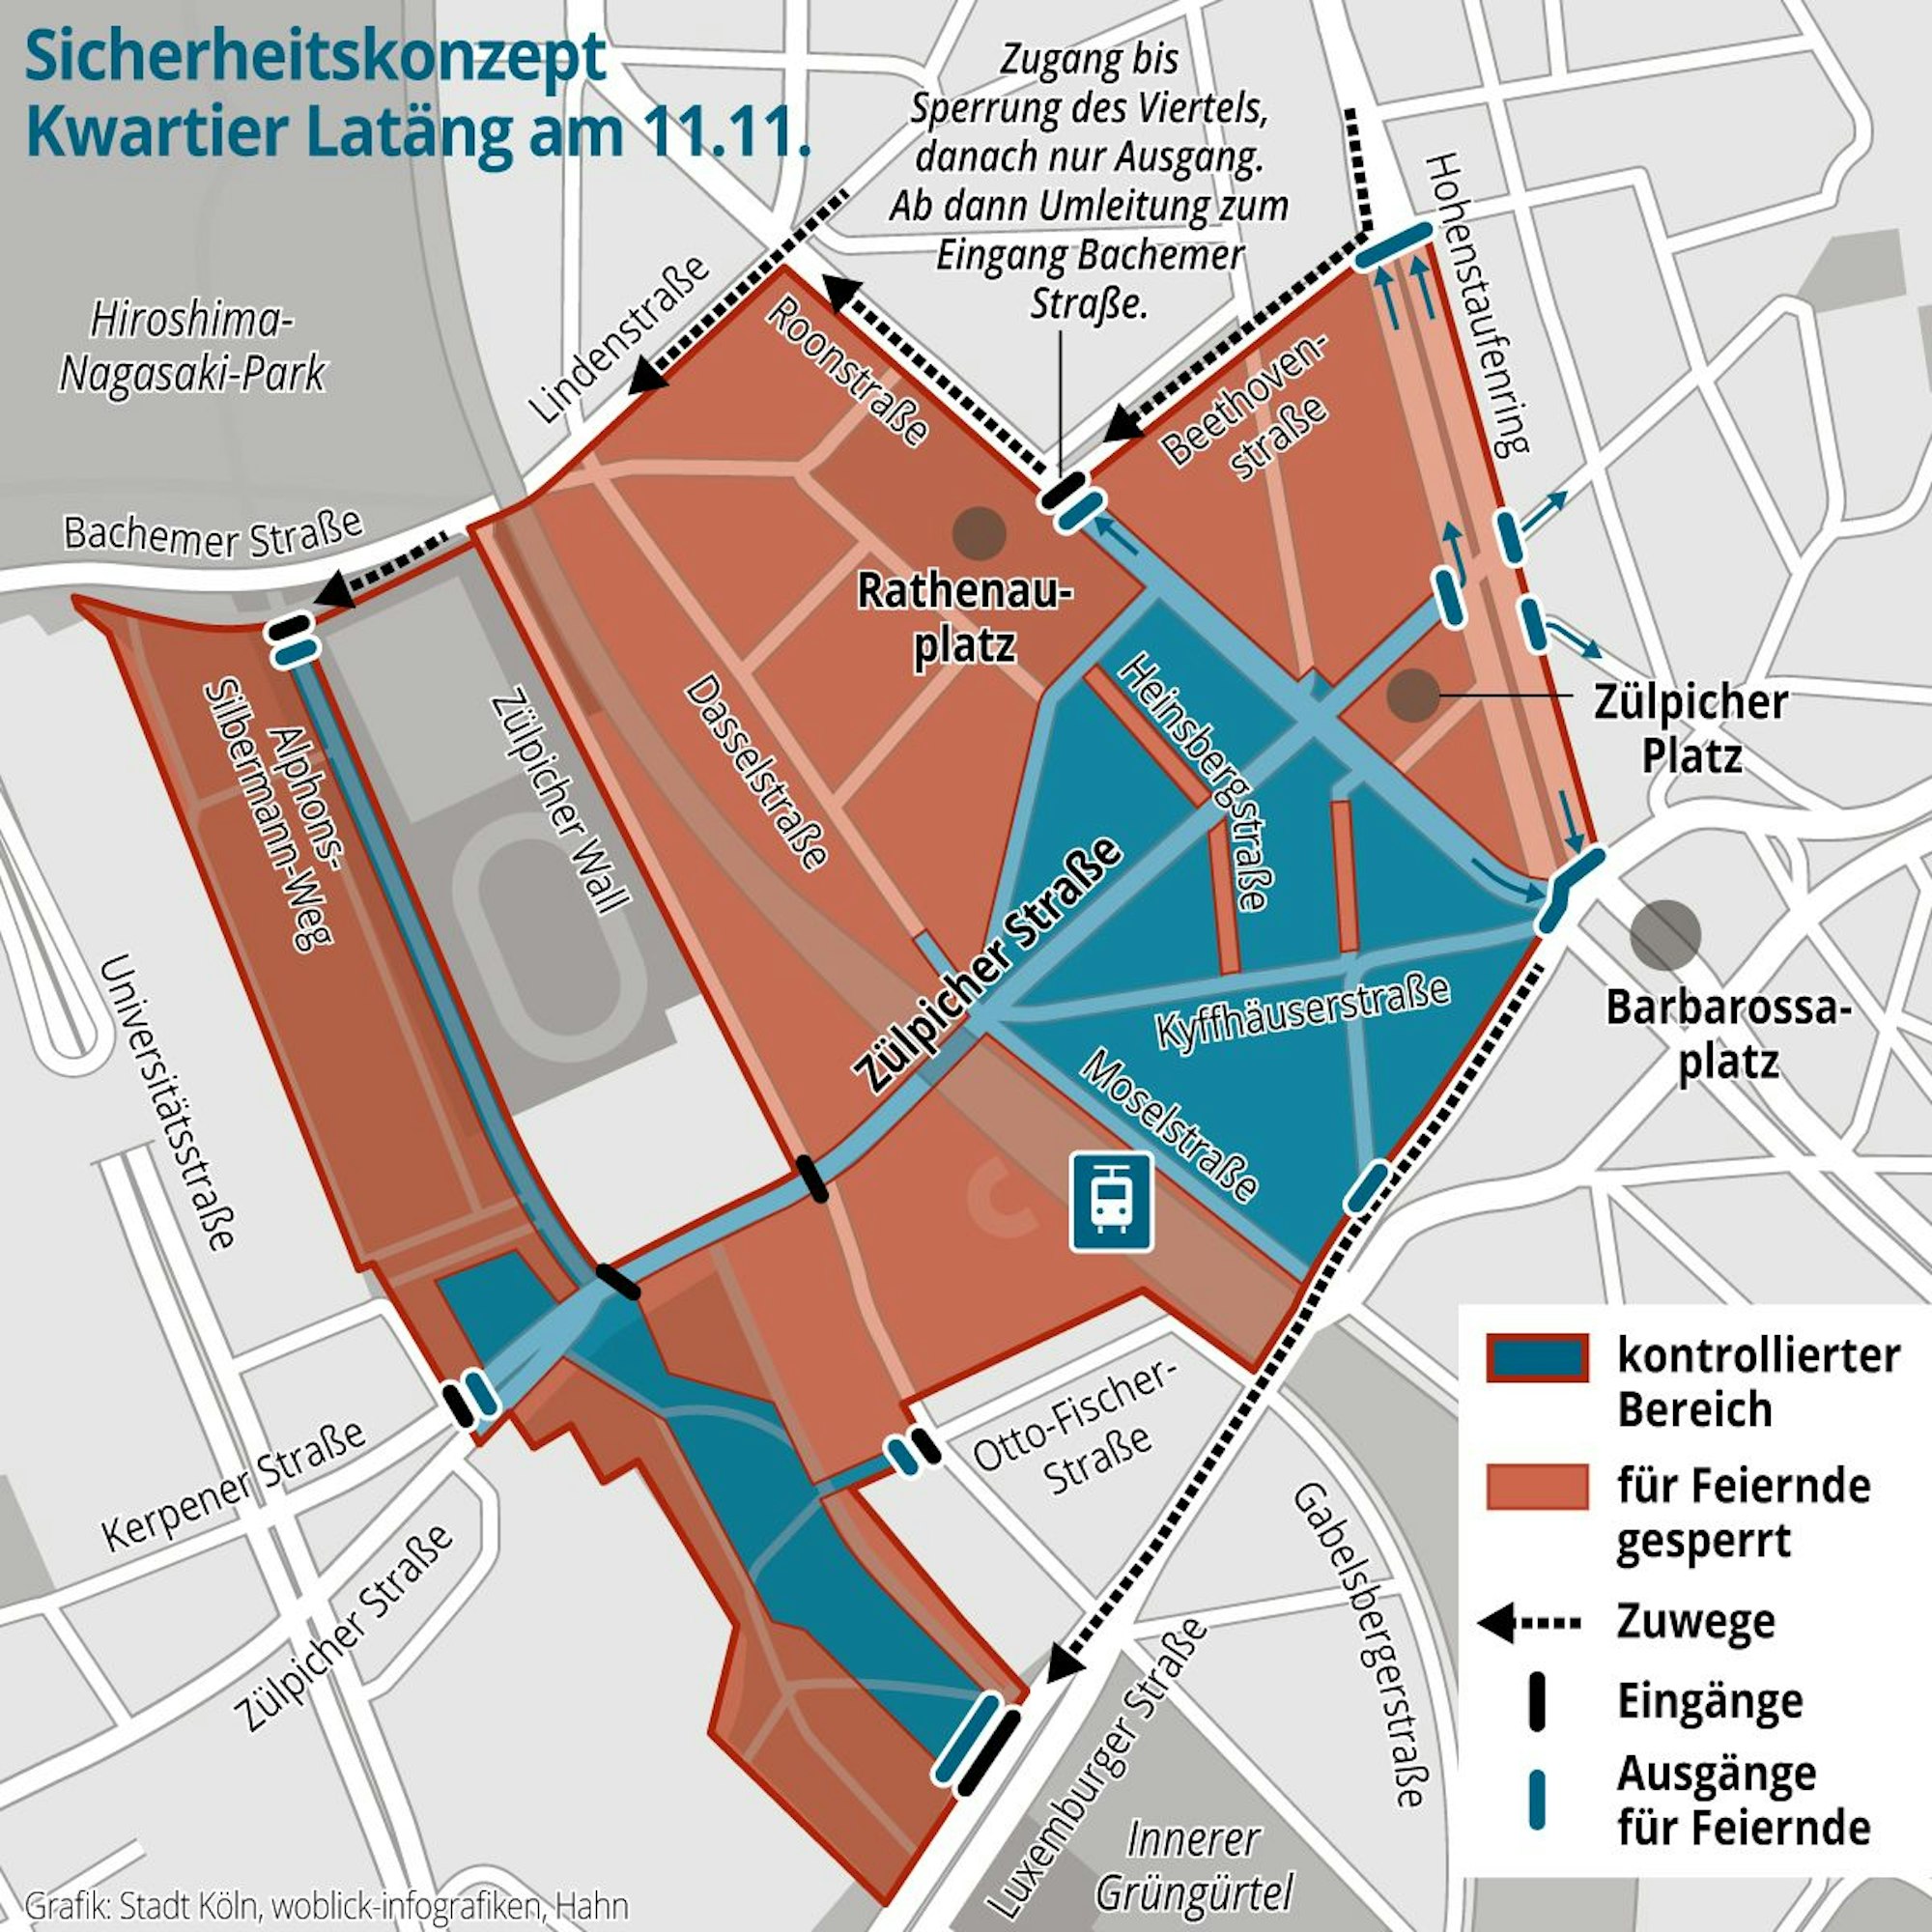 Eine Grafik des Sicherheitskonzepts Kwartier Latäng am 11.11.